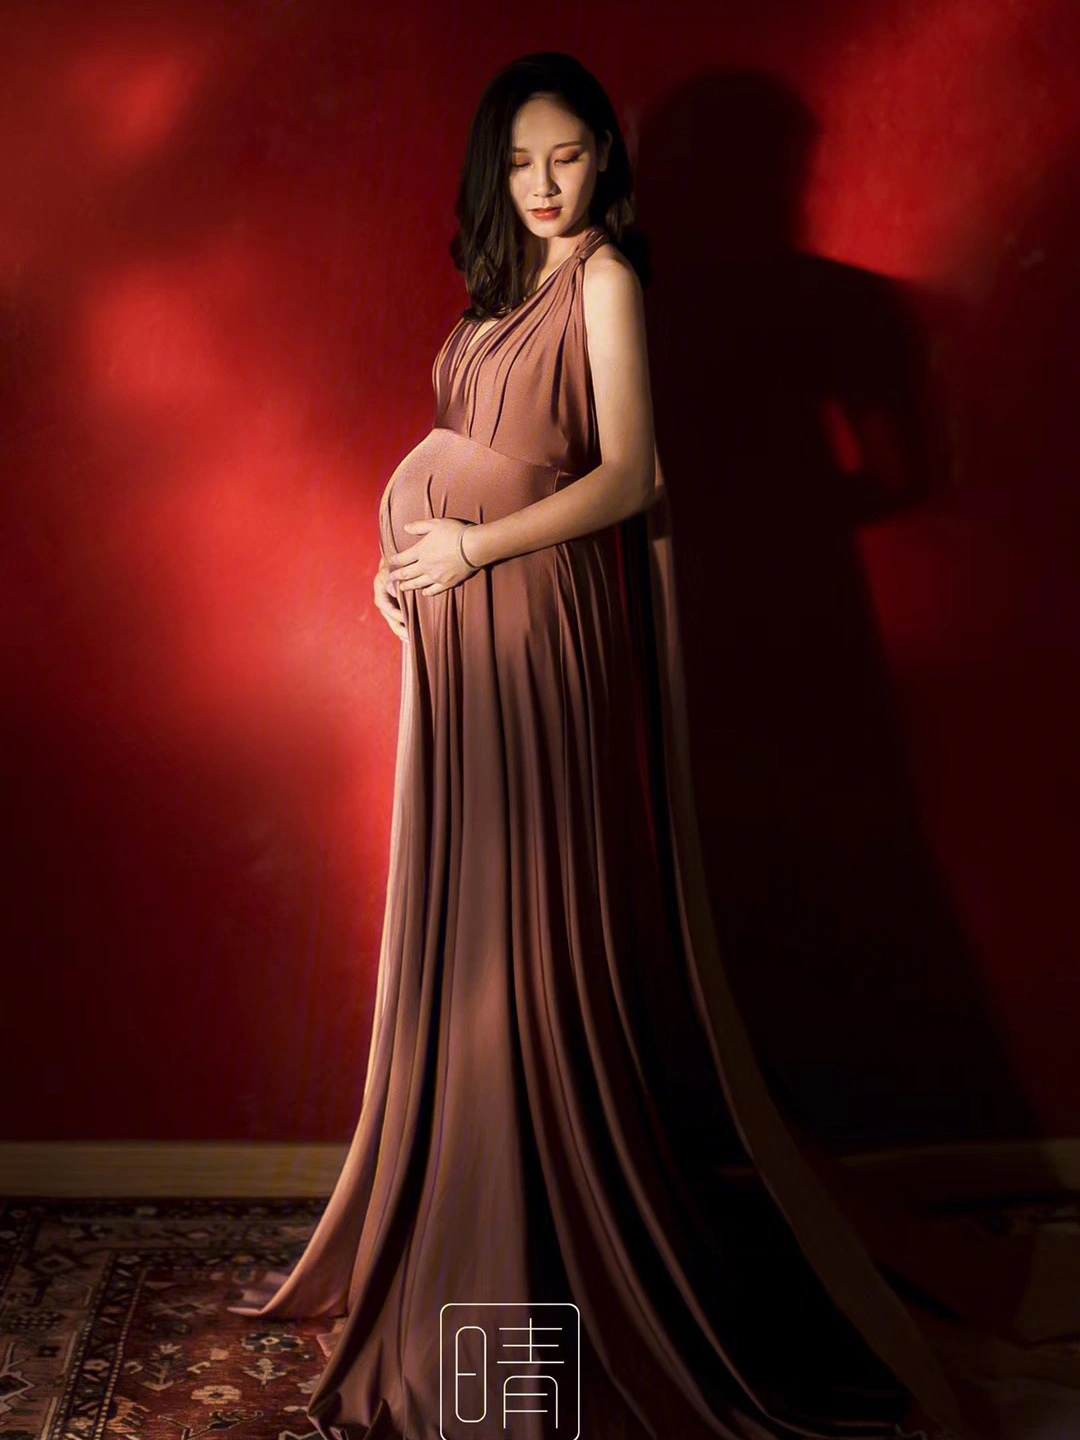 怀胎十月最美孕妇照伟大母亲